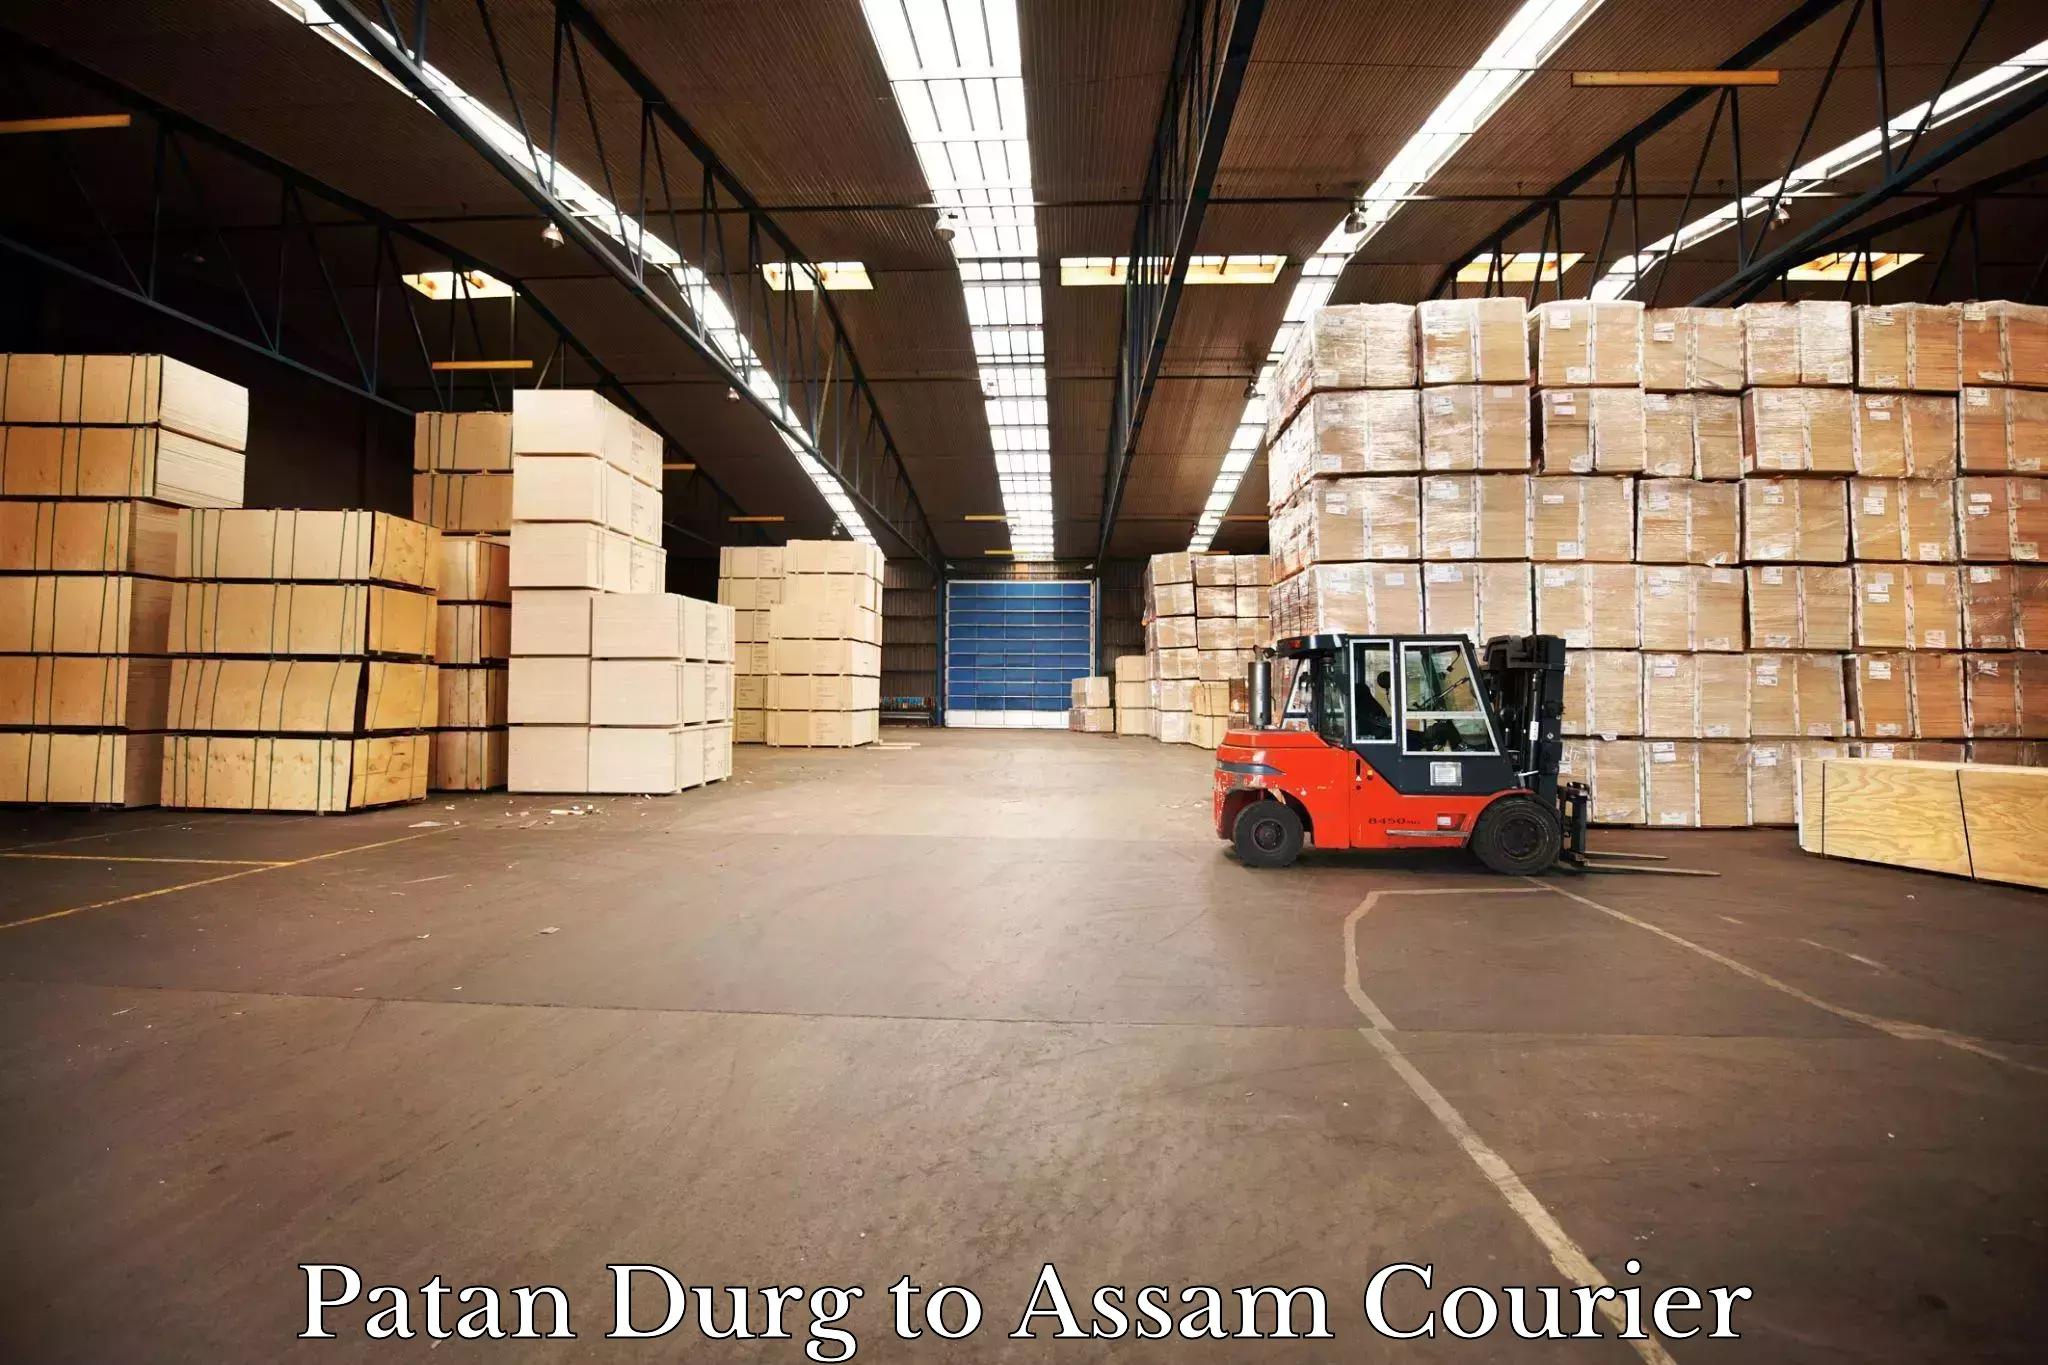 Ocean freight courier Patan Durg to Assam